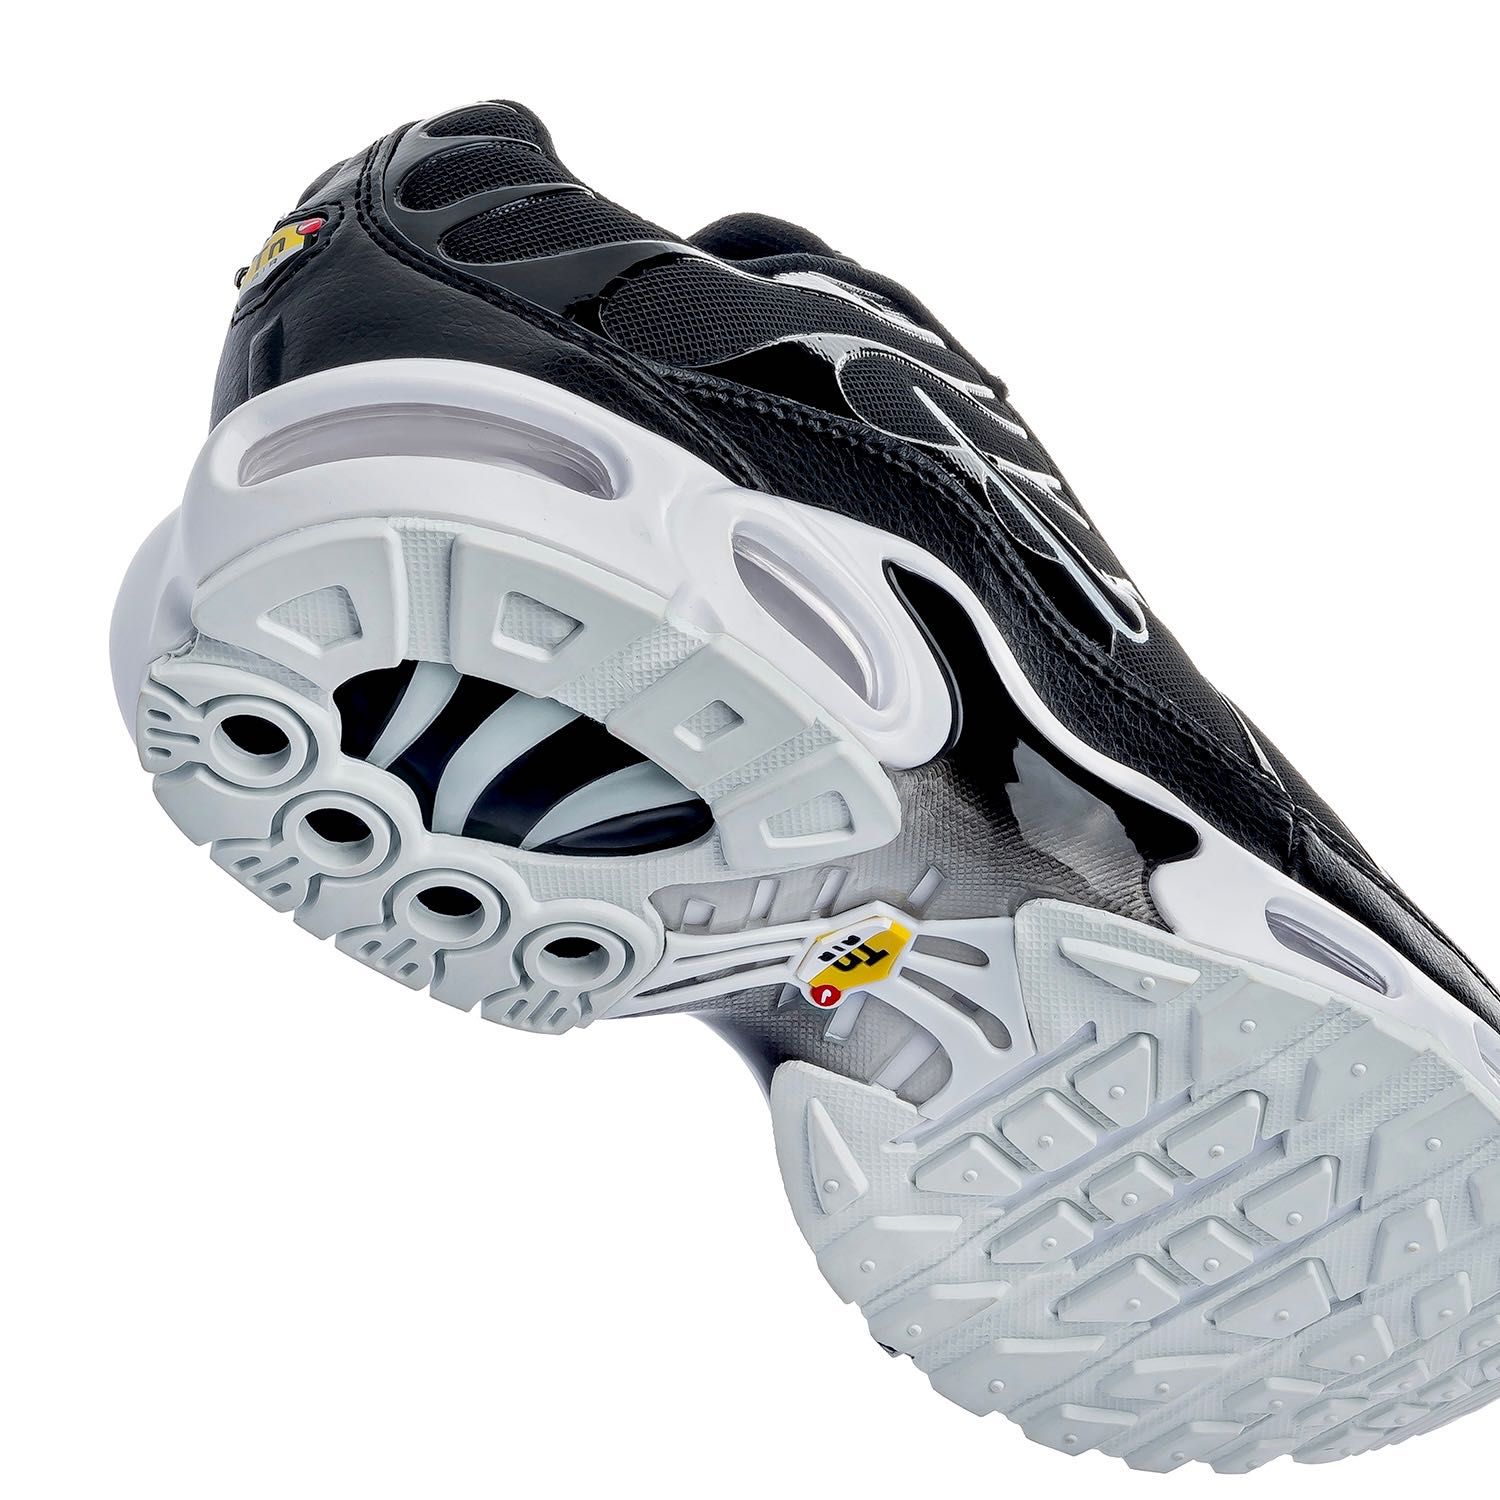 Мужские кроссовки Nike Air Max Tn Plus «Black White» . Размеры 41-45